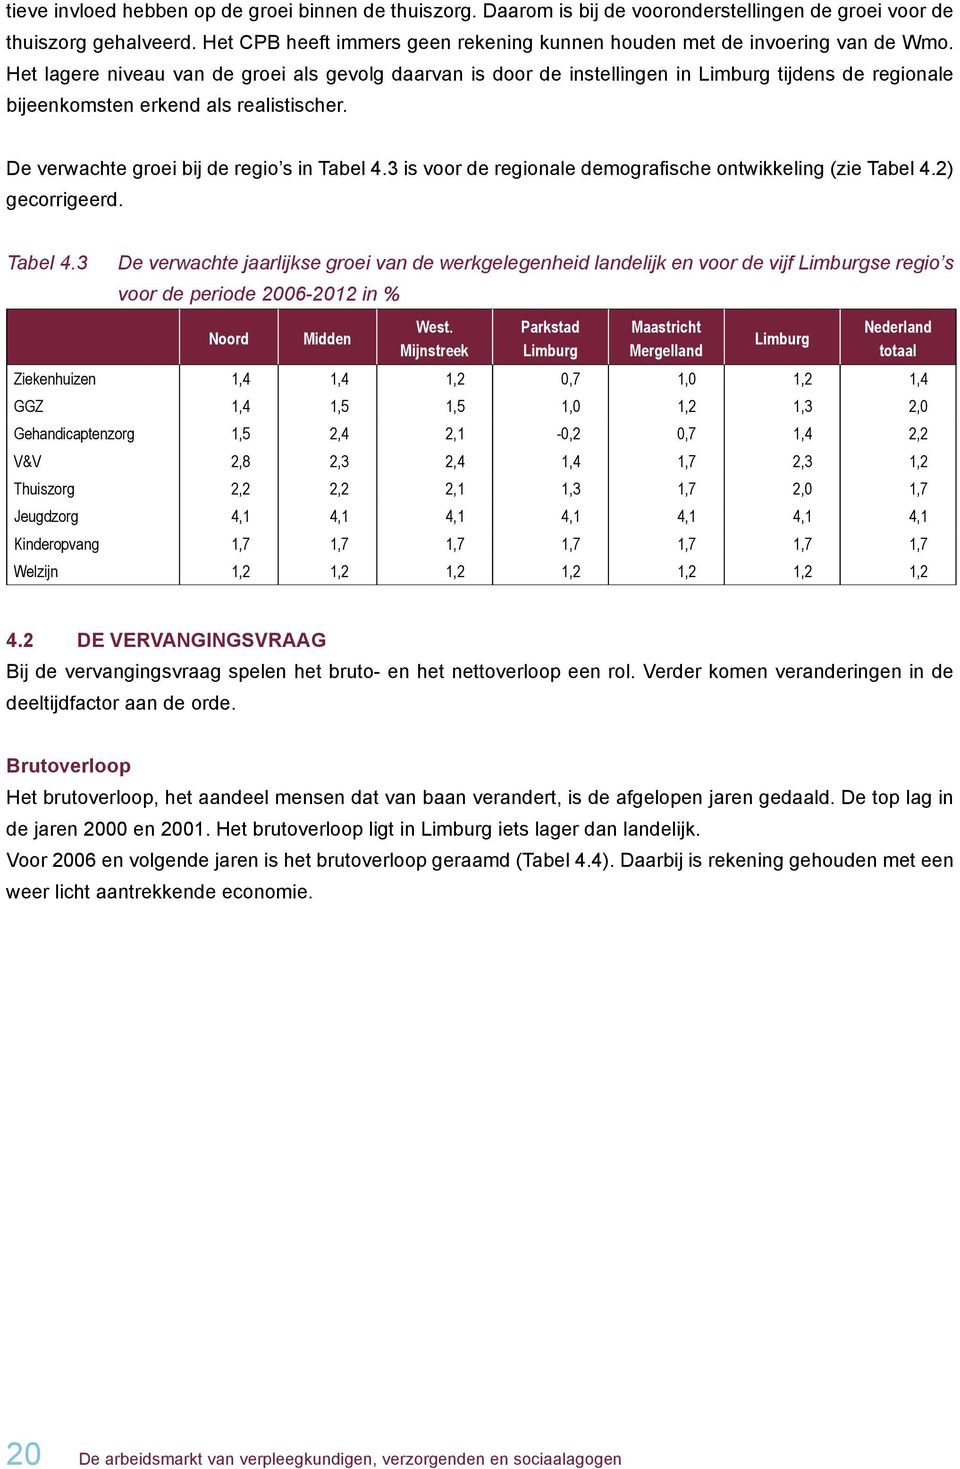 Het lagere niveau van de groei als gevolg daarvan is door de instellingen in Limburg tijdens de regionale bijeenkomsten erkend als realistischer. De verwachte groei bij de regio s in Tabel 4.